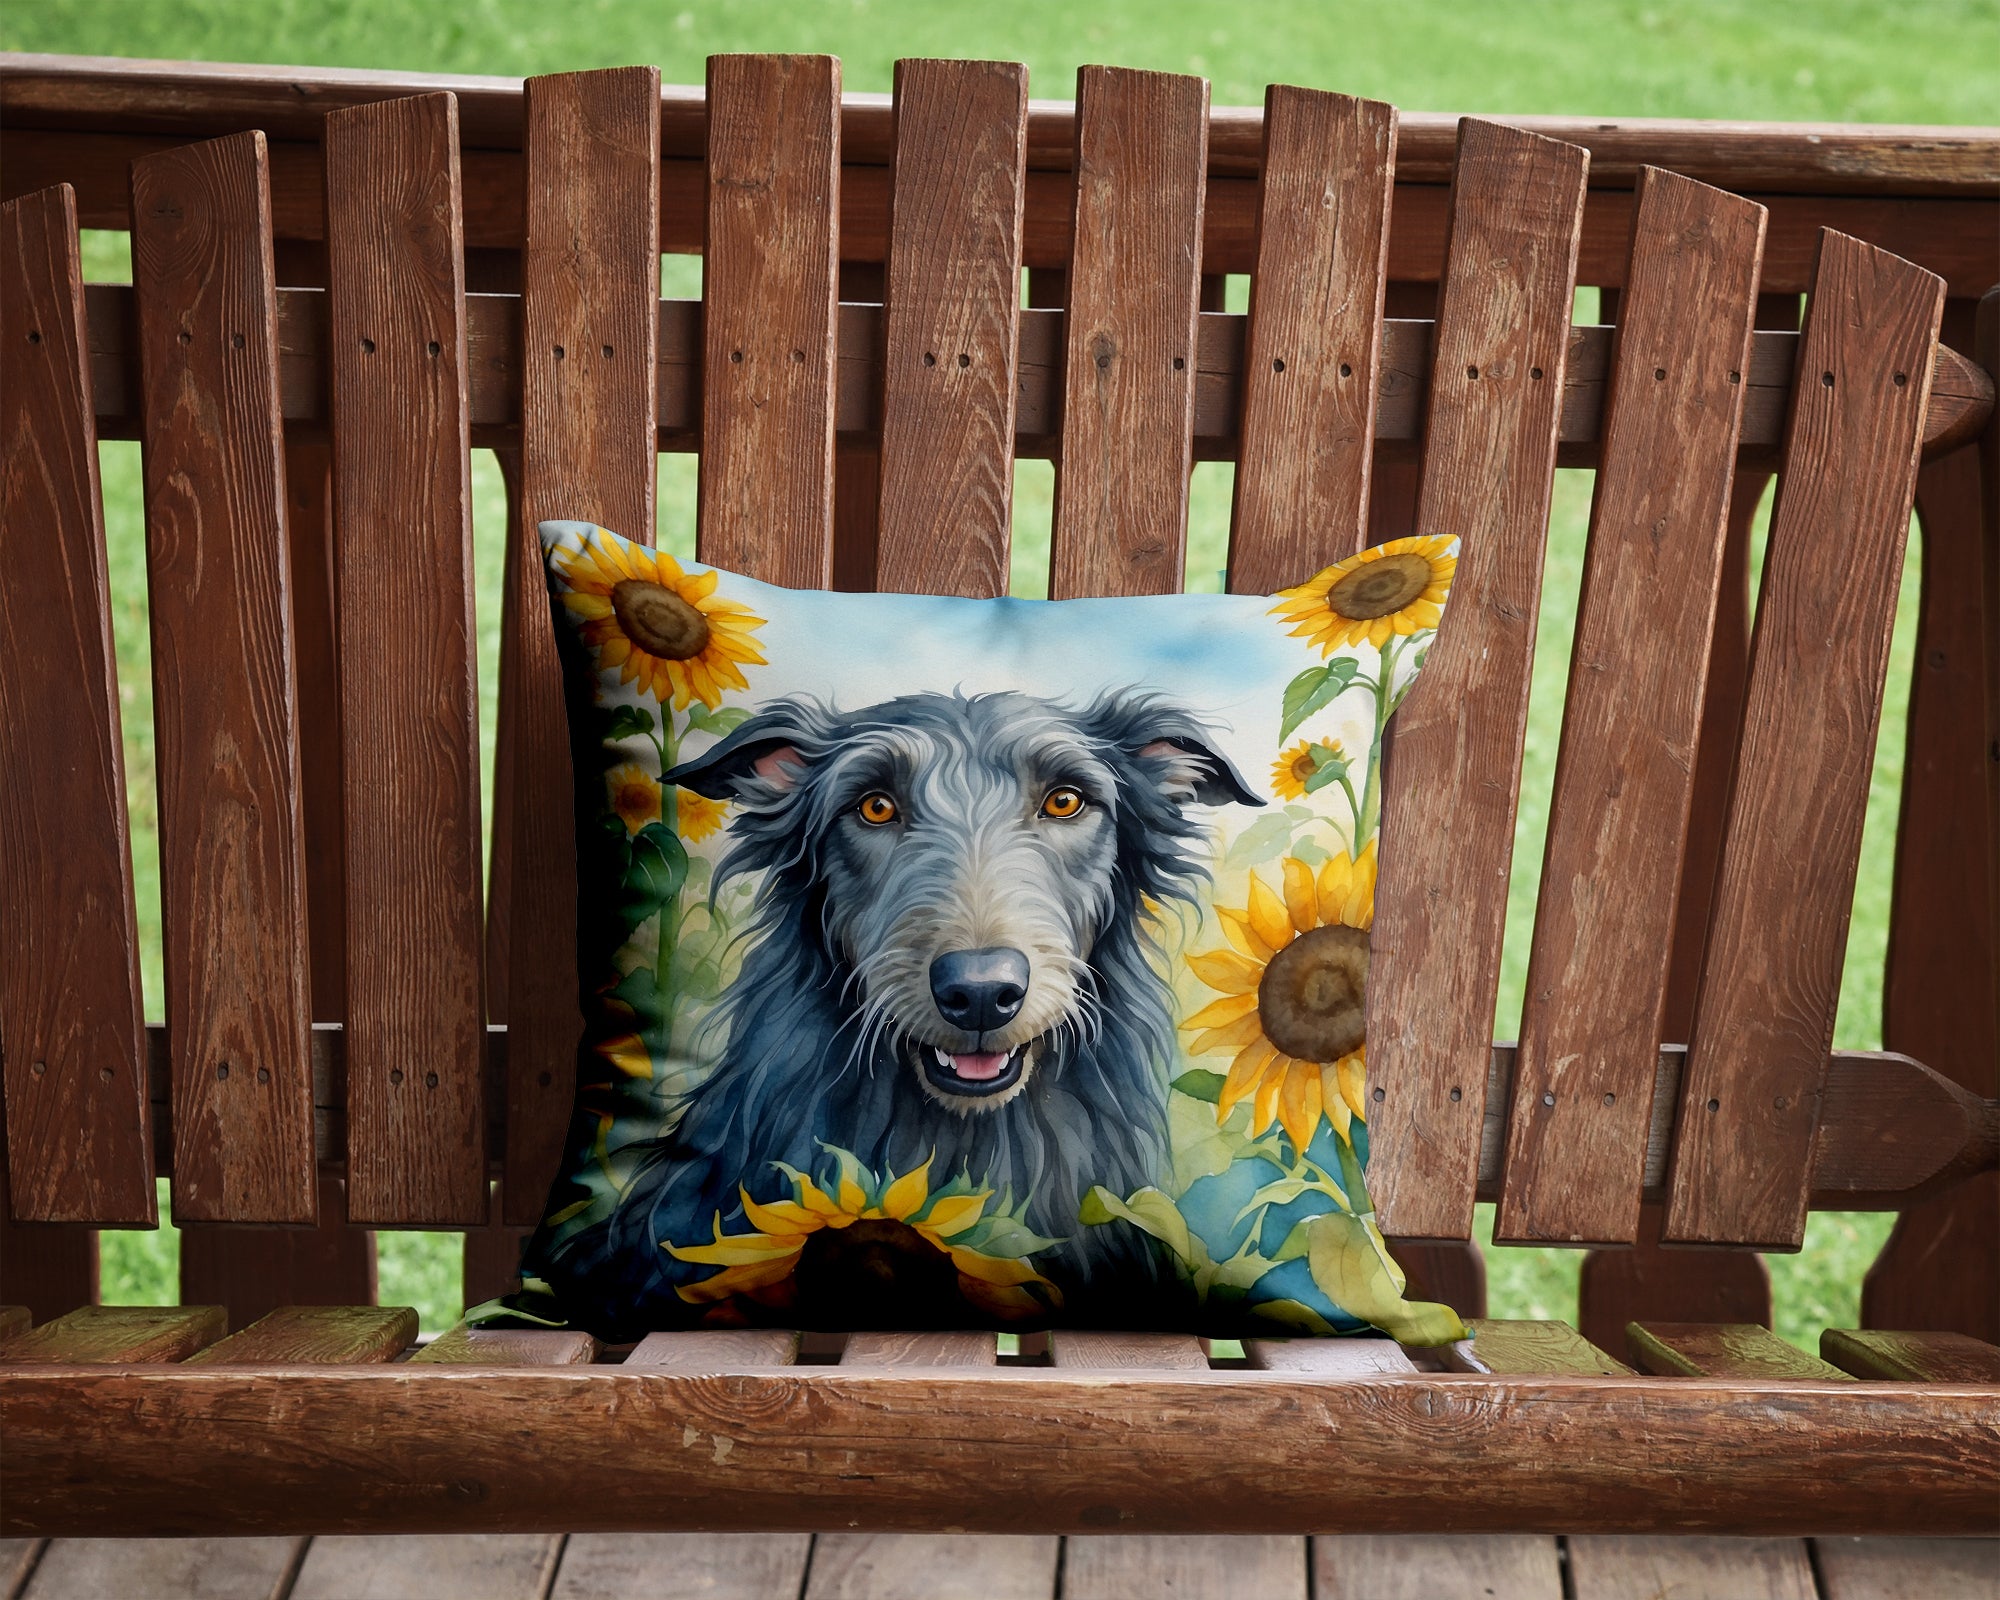 Buy this Scottish Deerhound in Sunflowers Throw Pillow